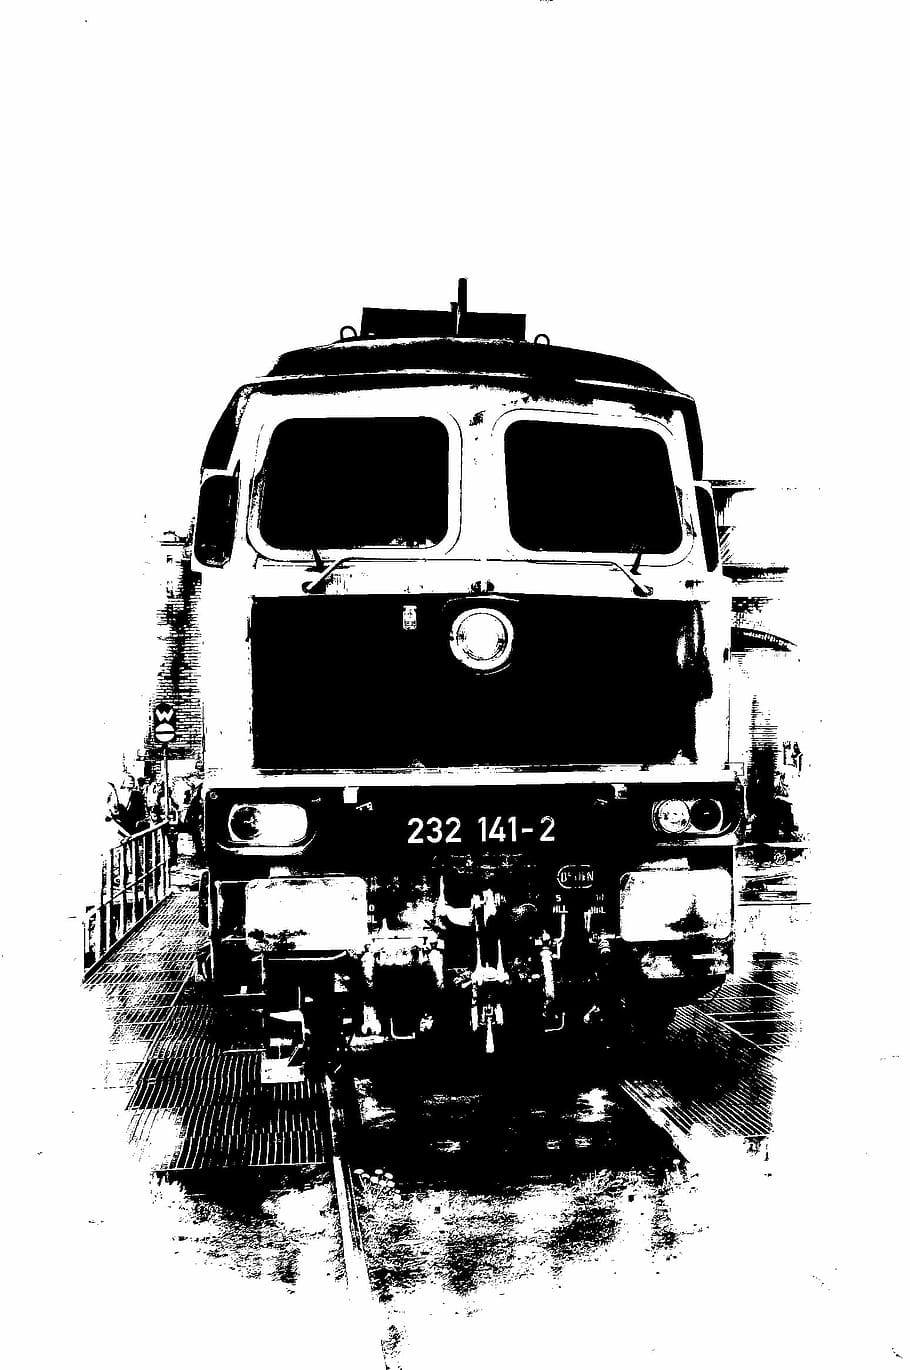 Locomotiva a diesel, Monocromática, Ferroviária, transporte, tráfego ferroviário, trem, veículos, meios públicos de transporte, preto e branco, ferrovia Pista